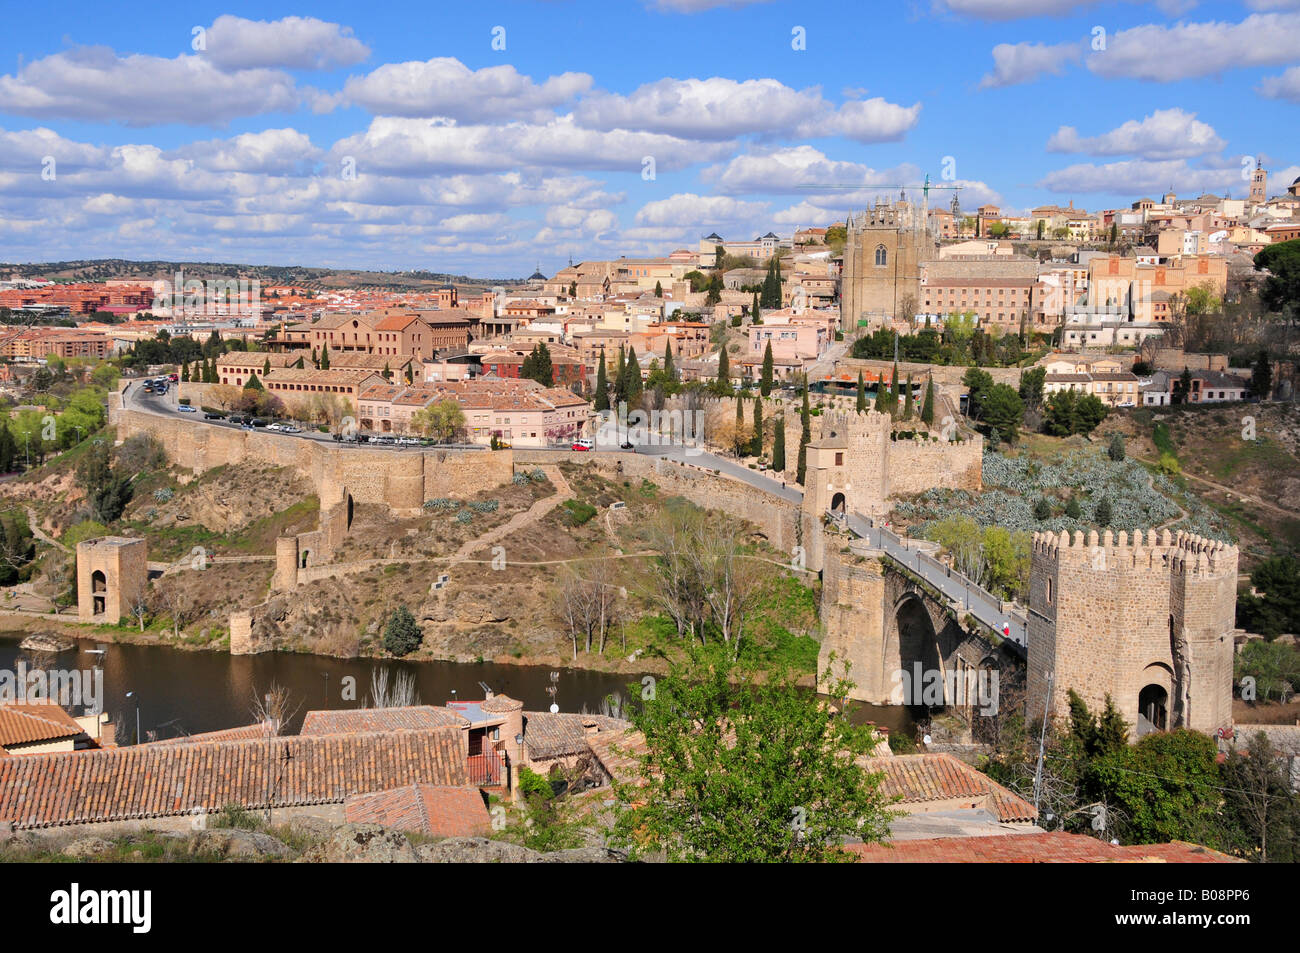 Vista de la parte antigua de Toledo y el río Tajo, Puente de San Martín en primer plano, Toledo, España Foto de stock